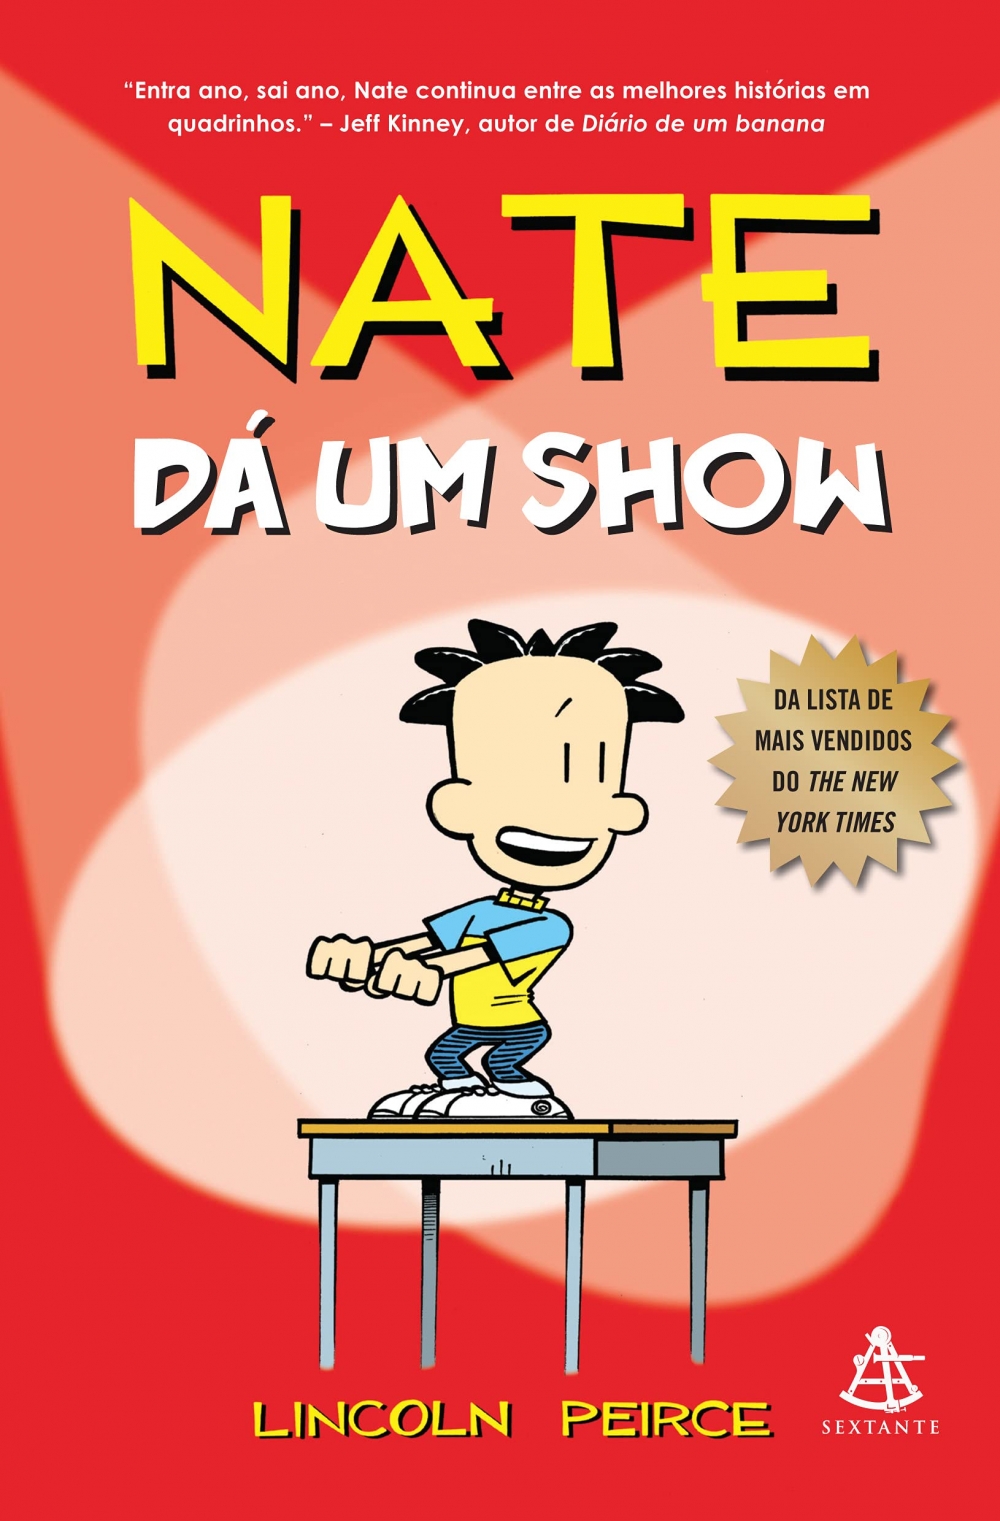 Nate dá um show